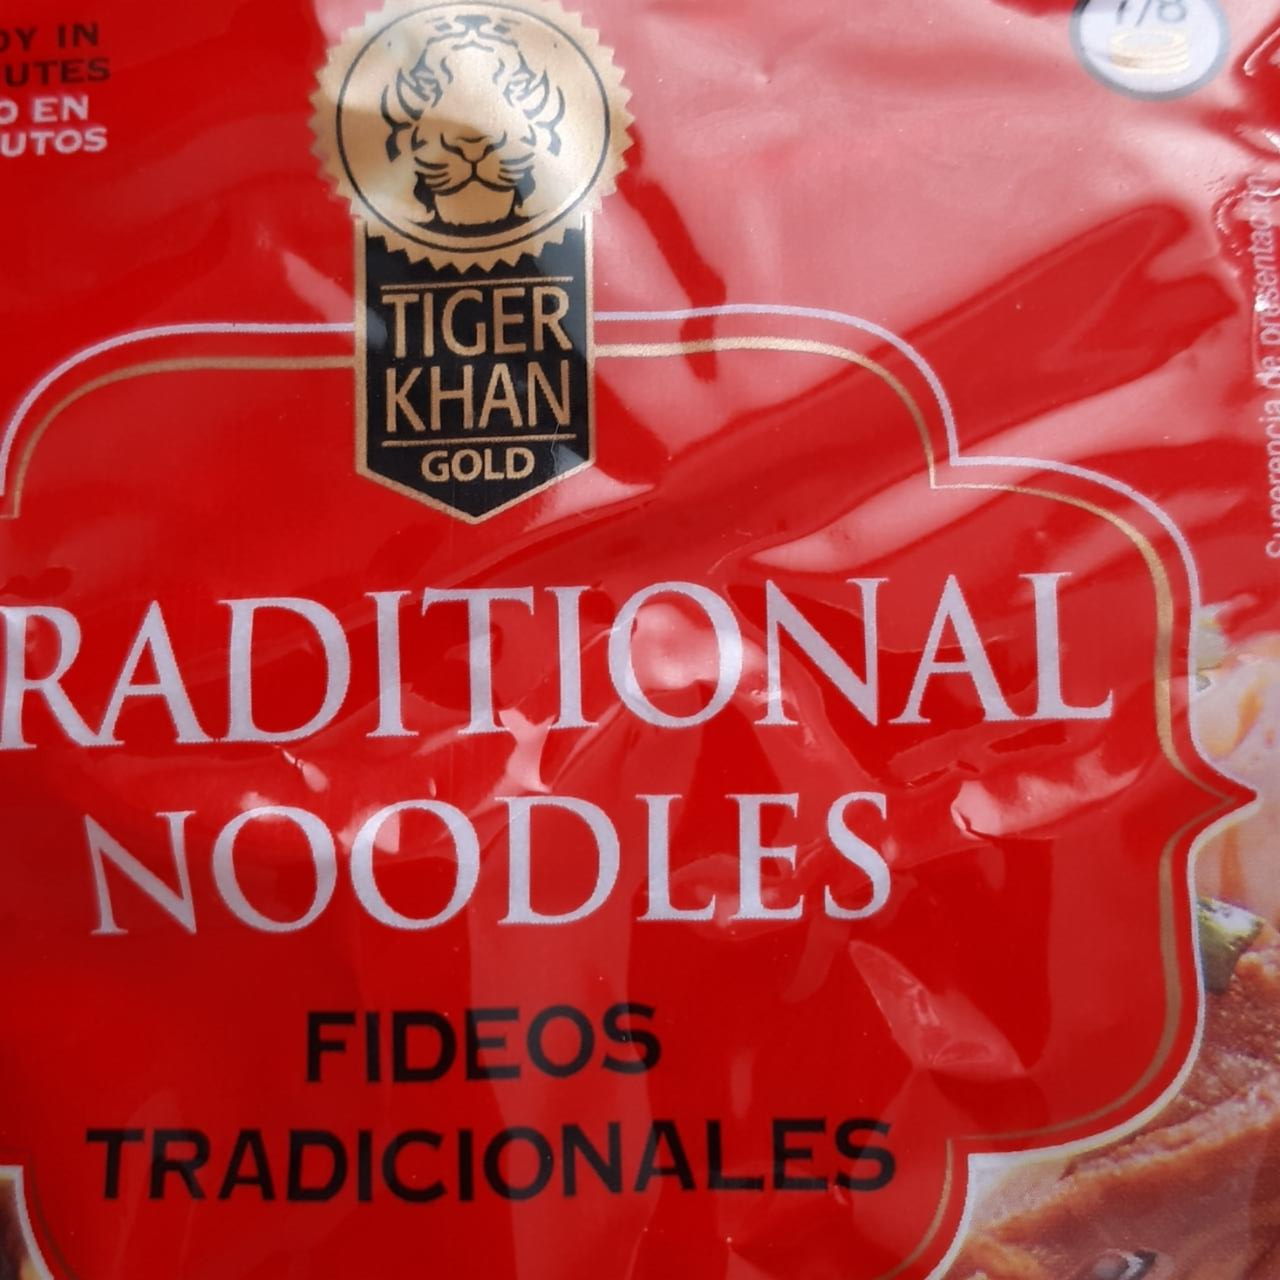 Fotografie - Traditional noodles Tiger Khan Gold